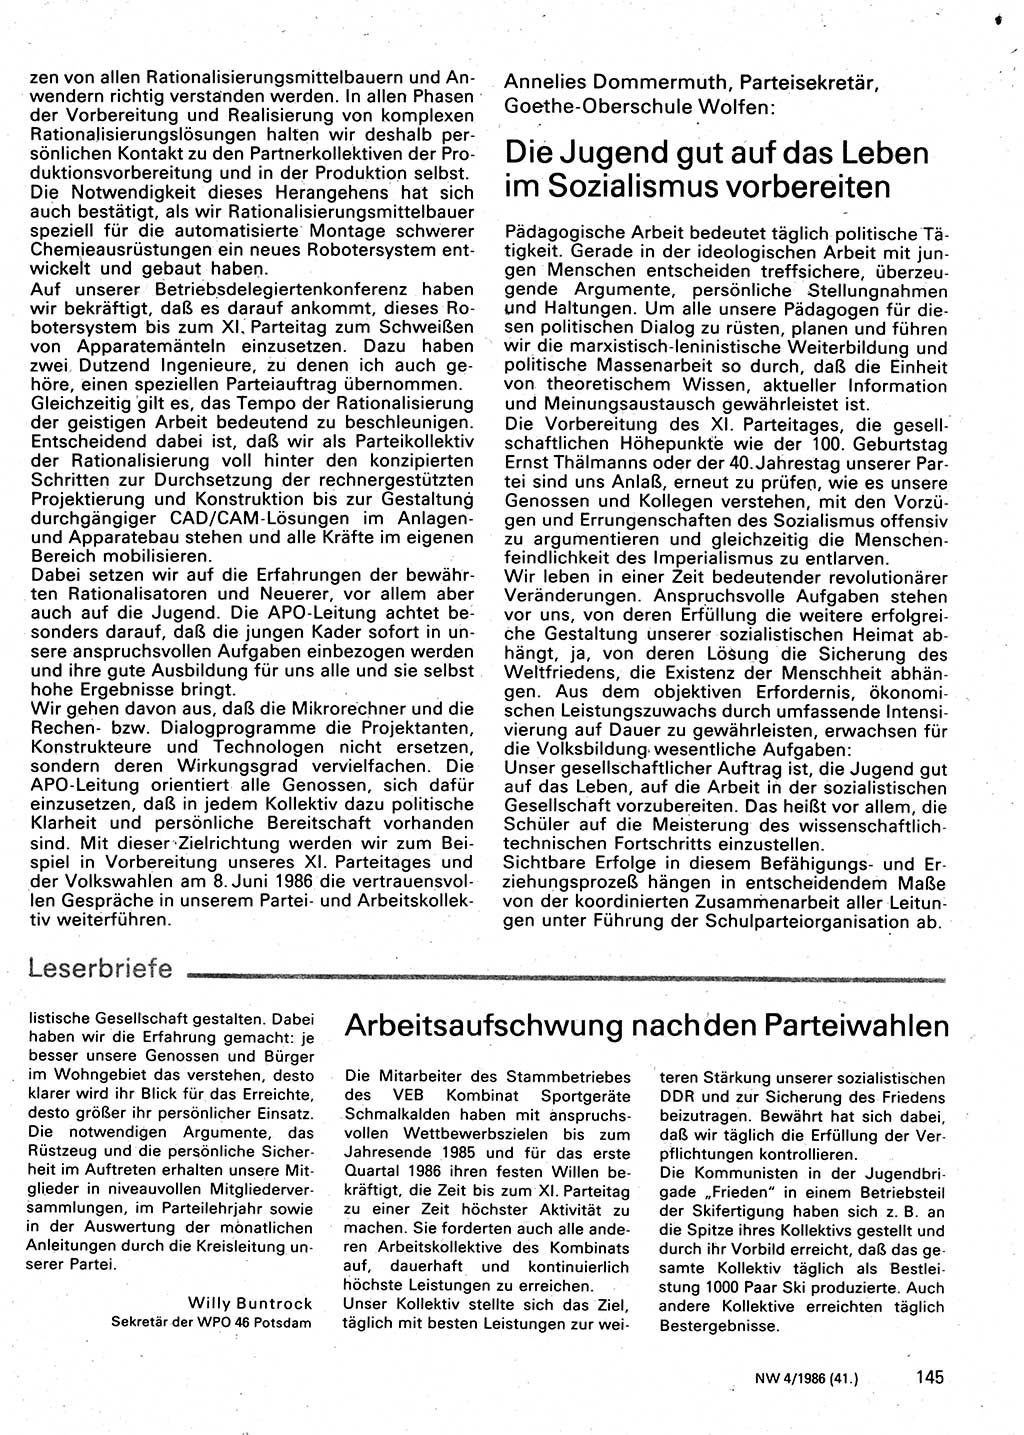 Neuer Weg (NW), Organ des Zentralkomitees (ZK) der SED (Sozialistische Einheitspartei Deutschlands) für Fragen des Parteilebens, 41. Jahrgang [Deutsche Demokratische Republik (DDR)] 1986, Seite 145 (NW ZK SED DDR 1986, S. 145)